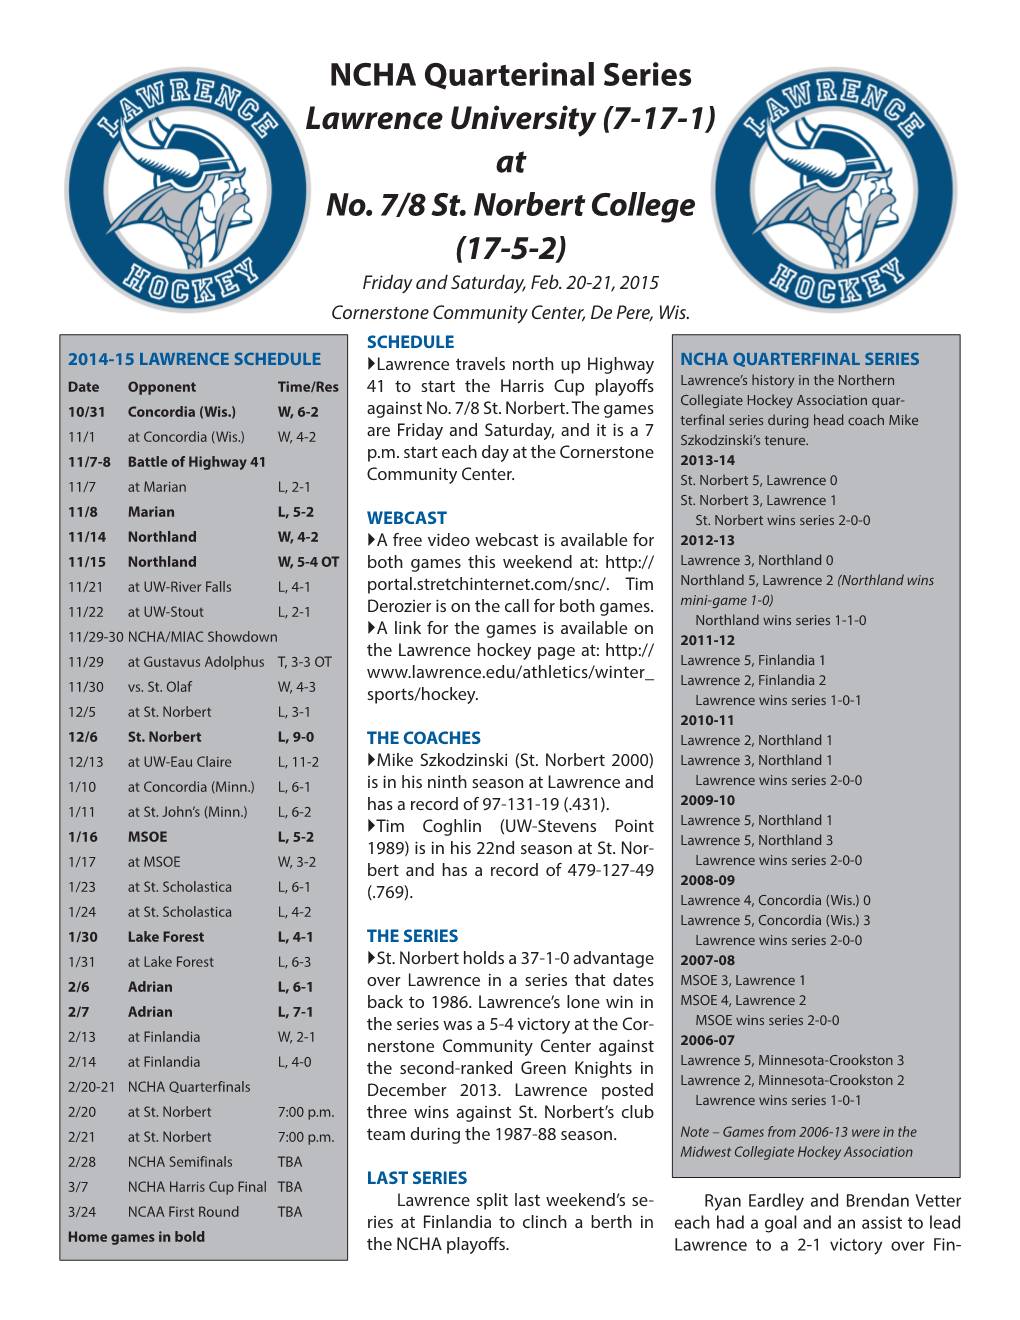 NCHA Quarterinal Series Lawrence University (7-17-1) at No. 7/8 St